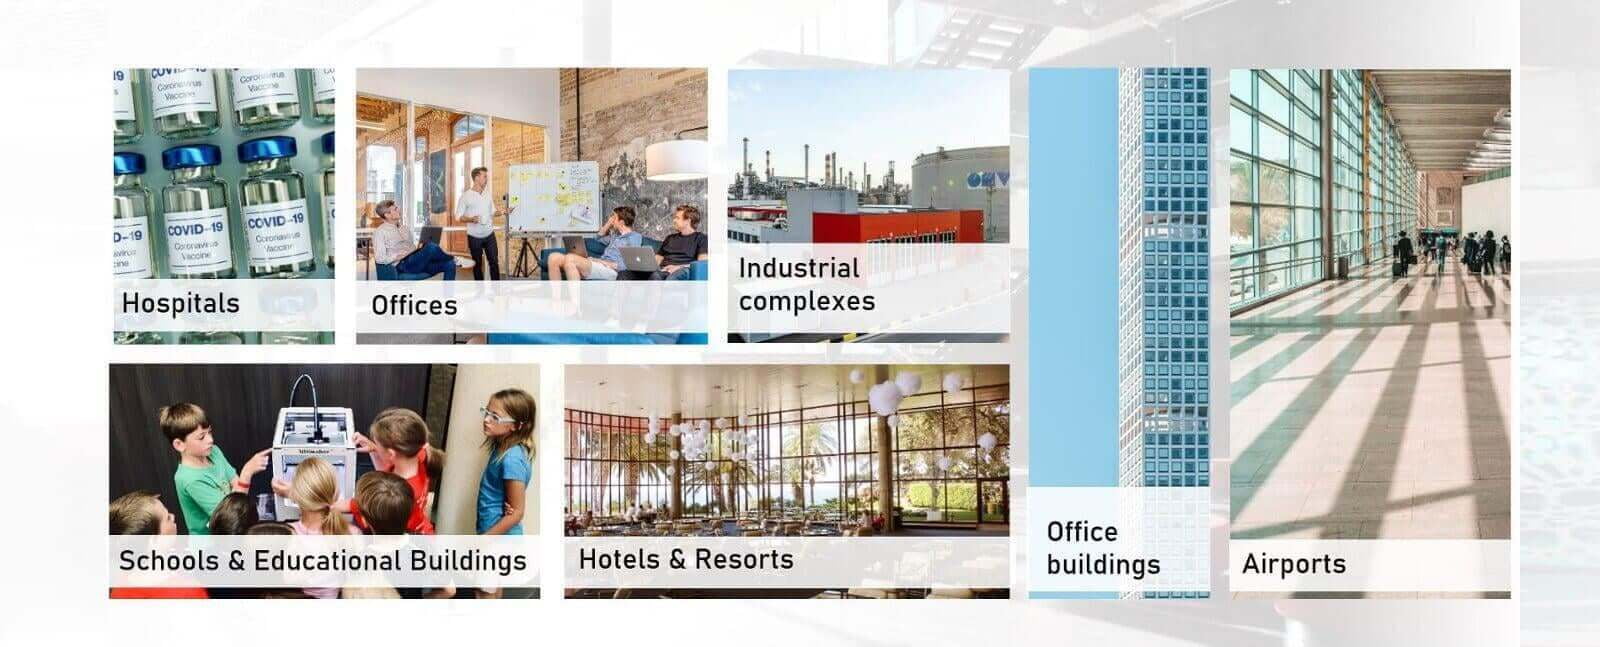 Le soluzioni Smart Building sono adatte per ospedali, uffici, complessi industriali e fabbriche, scuole, hotel e aeroporti.